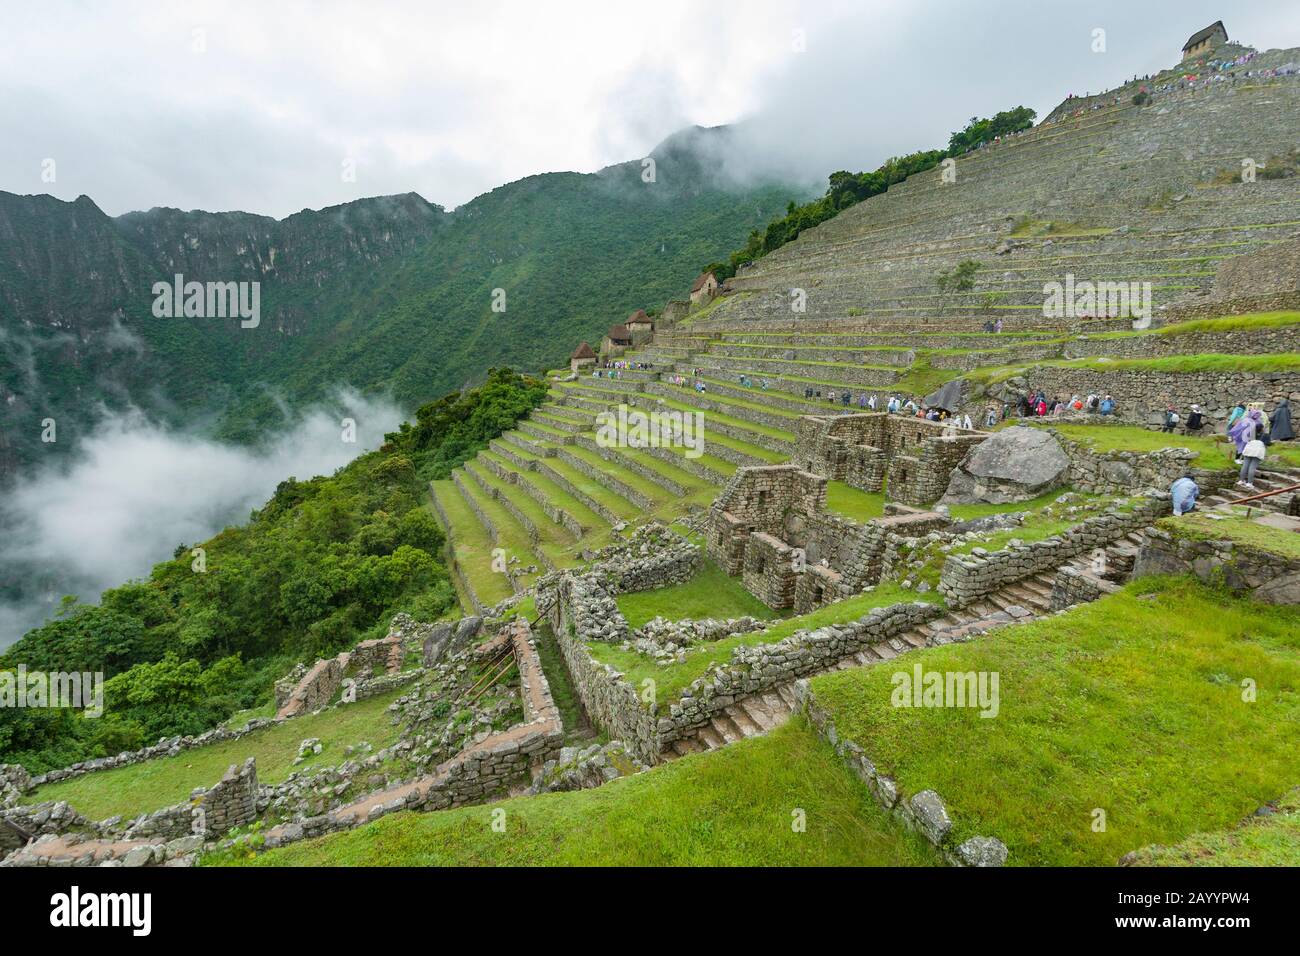 The ancient Inca city of Machu Picchu in Peru. Stock Photo